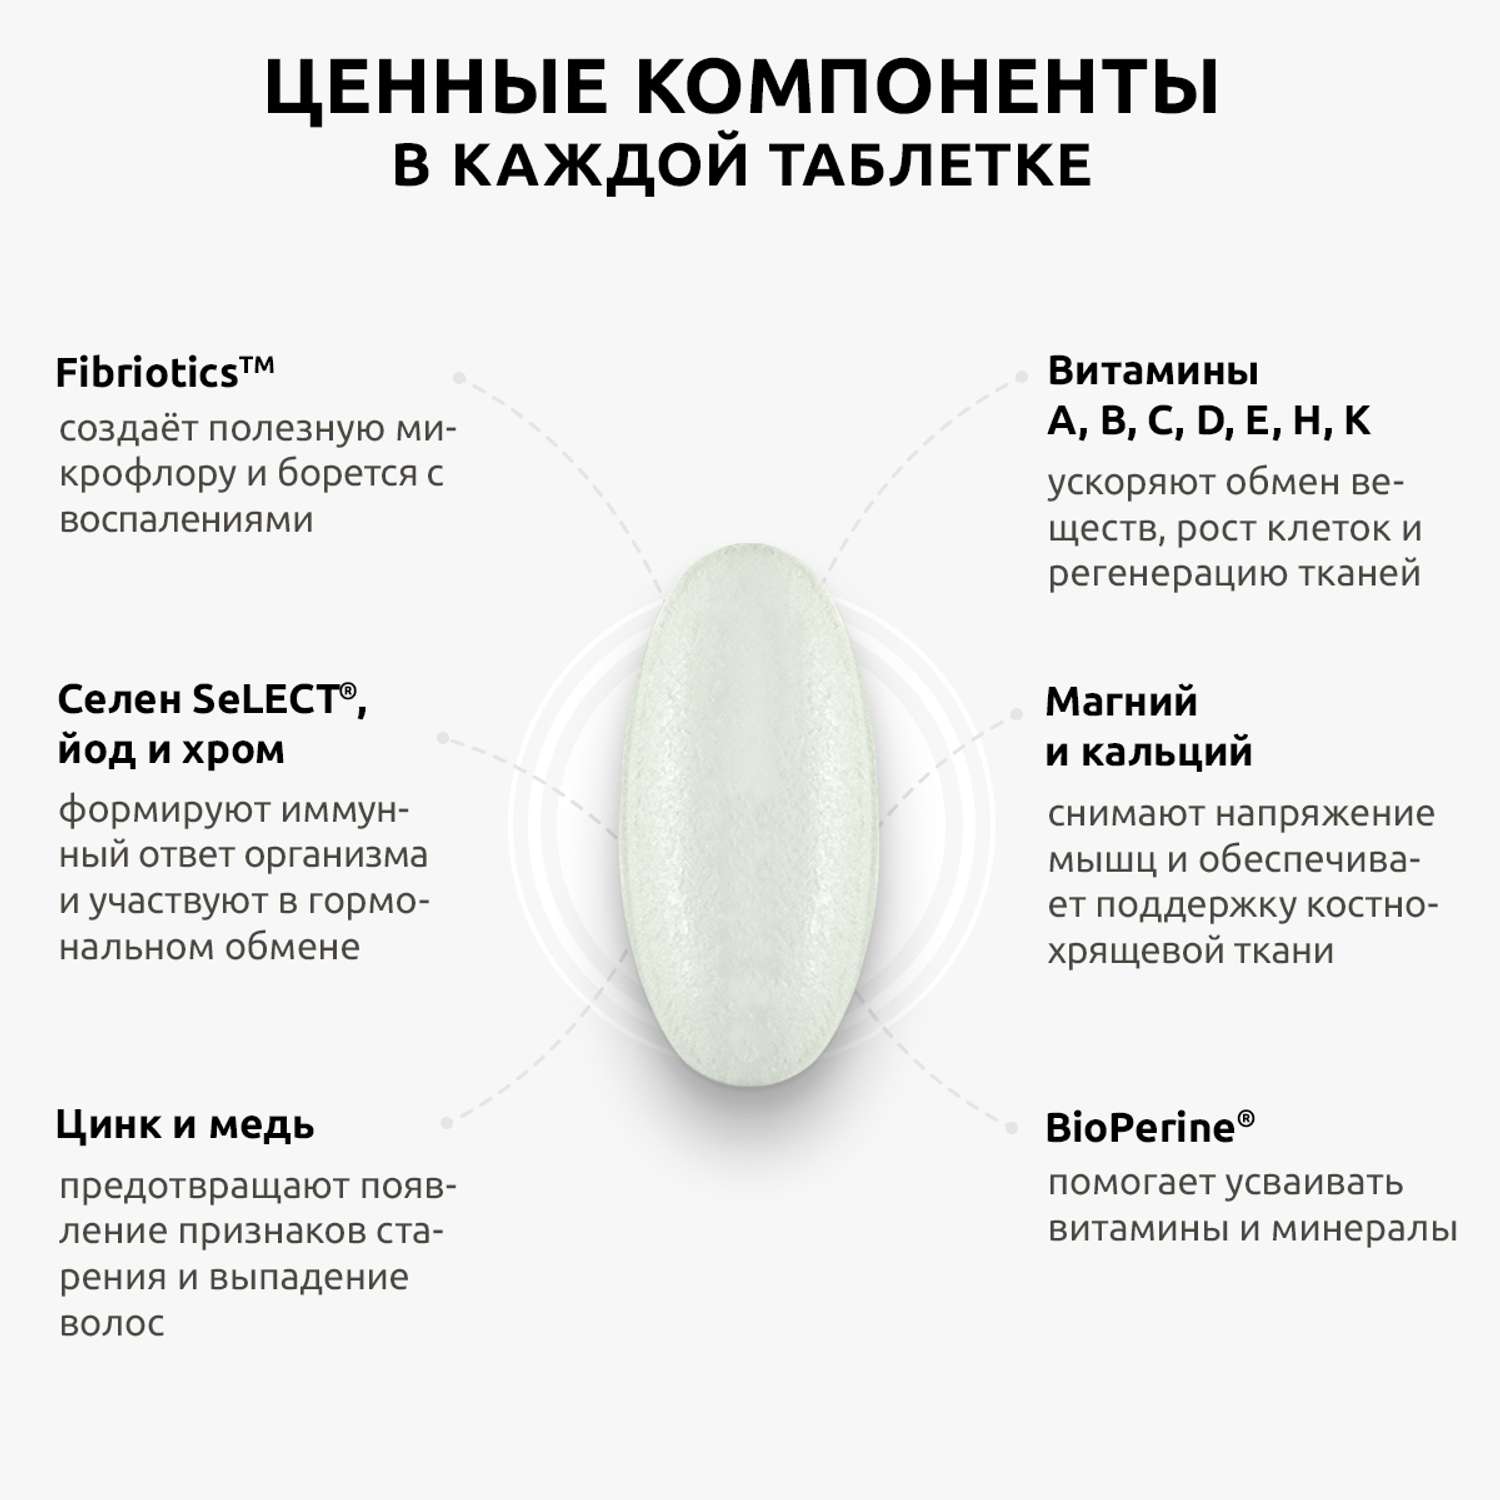 Комплекс для женщин и мужчин UltraBalance витамины и минералы 120 таблеток - фото 7